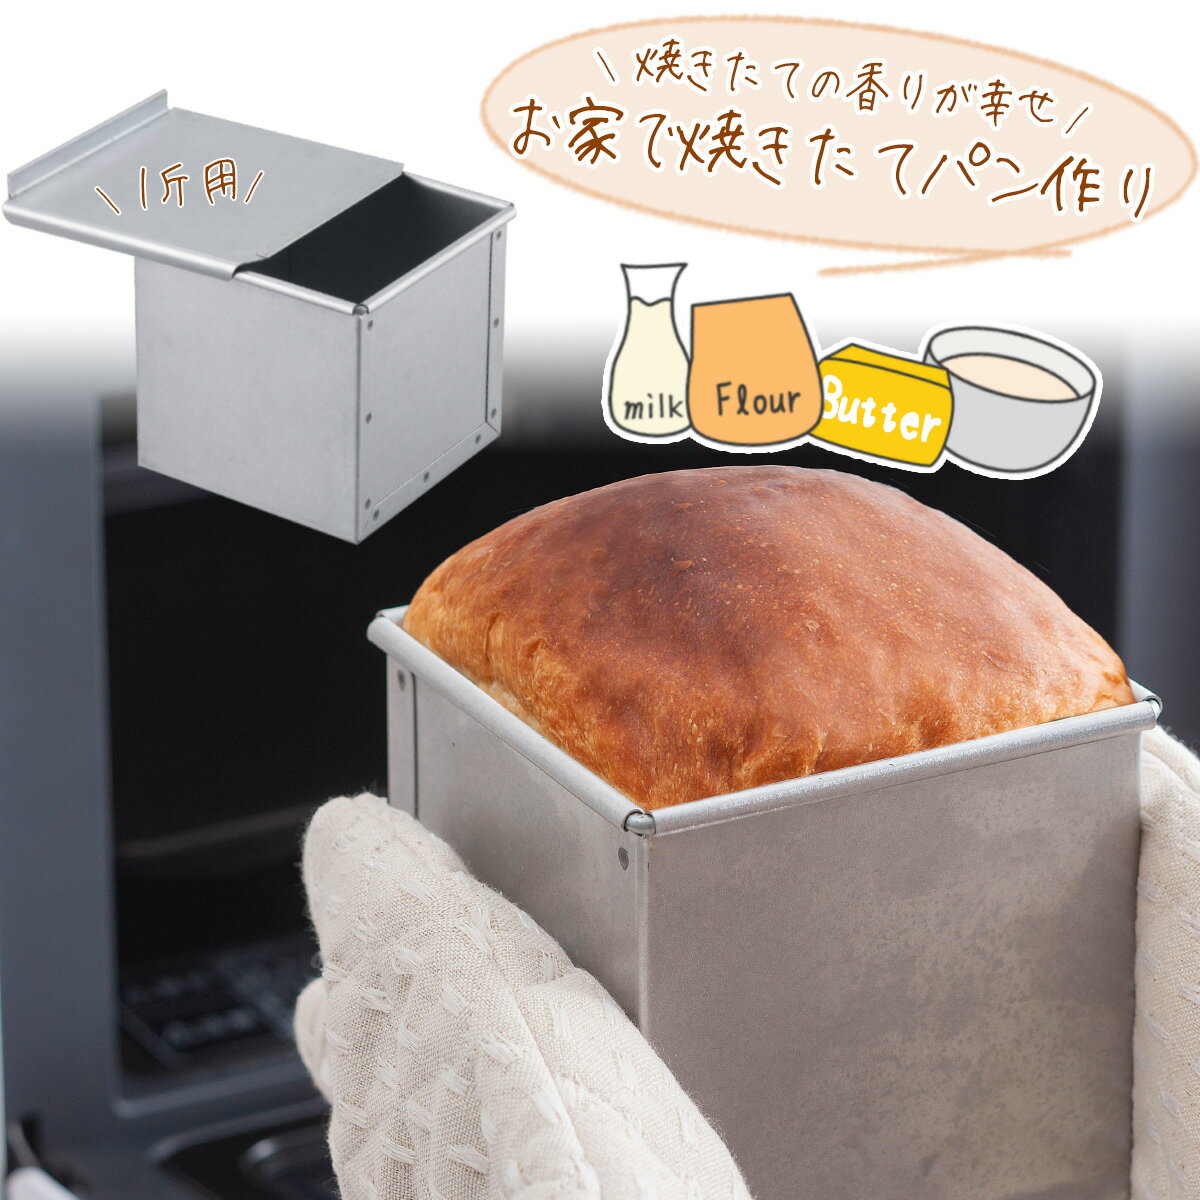 高級食パン パン焼 フタ付 1斤日本製 パン型 型 製パン 高級パン食パン 角食パン キューブパン 手作り焼きたて パン 手ごねパン 朝食ホームベーカリー インスタ 映えパン作り パン屋